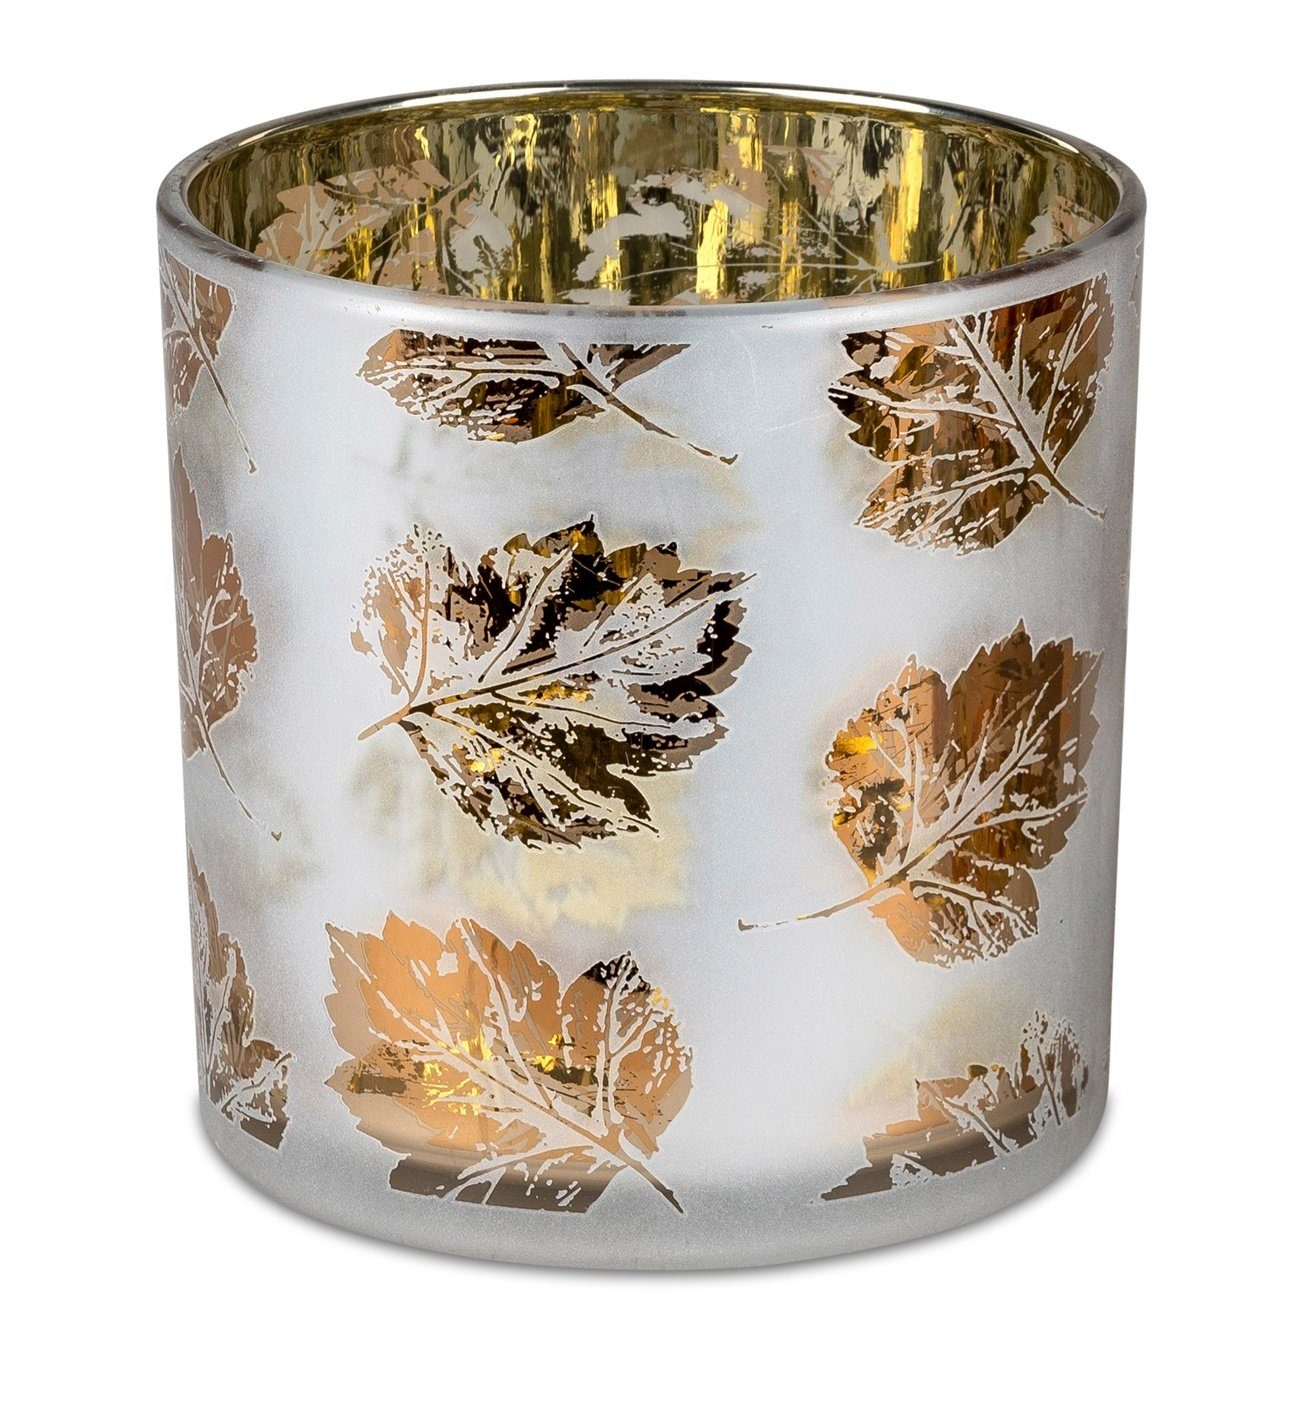 dekojohnson Windlicht Windlicht-Glas Teelichthalter Blätterdekor 15cm